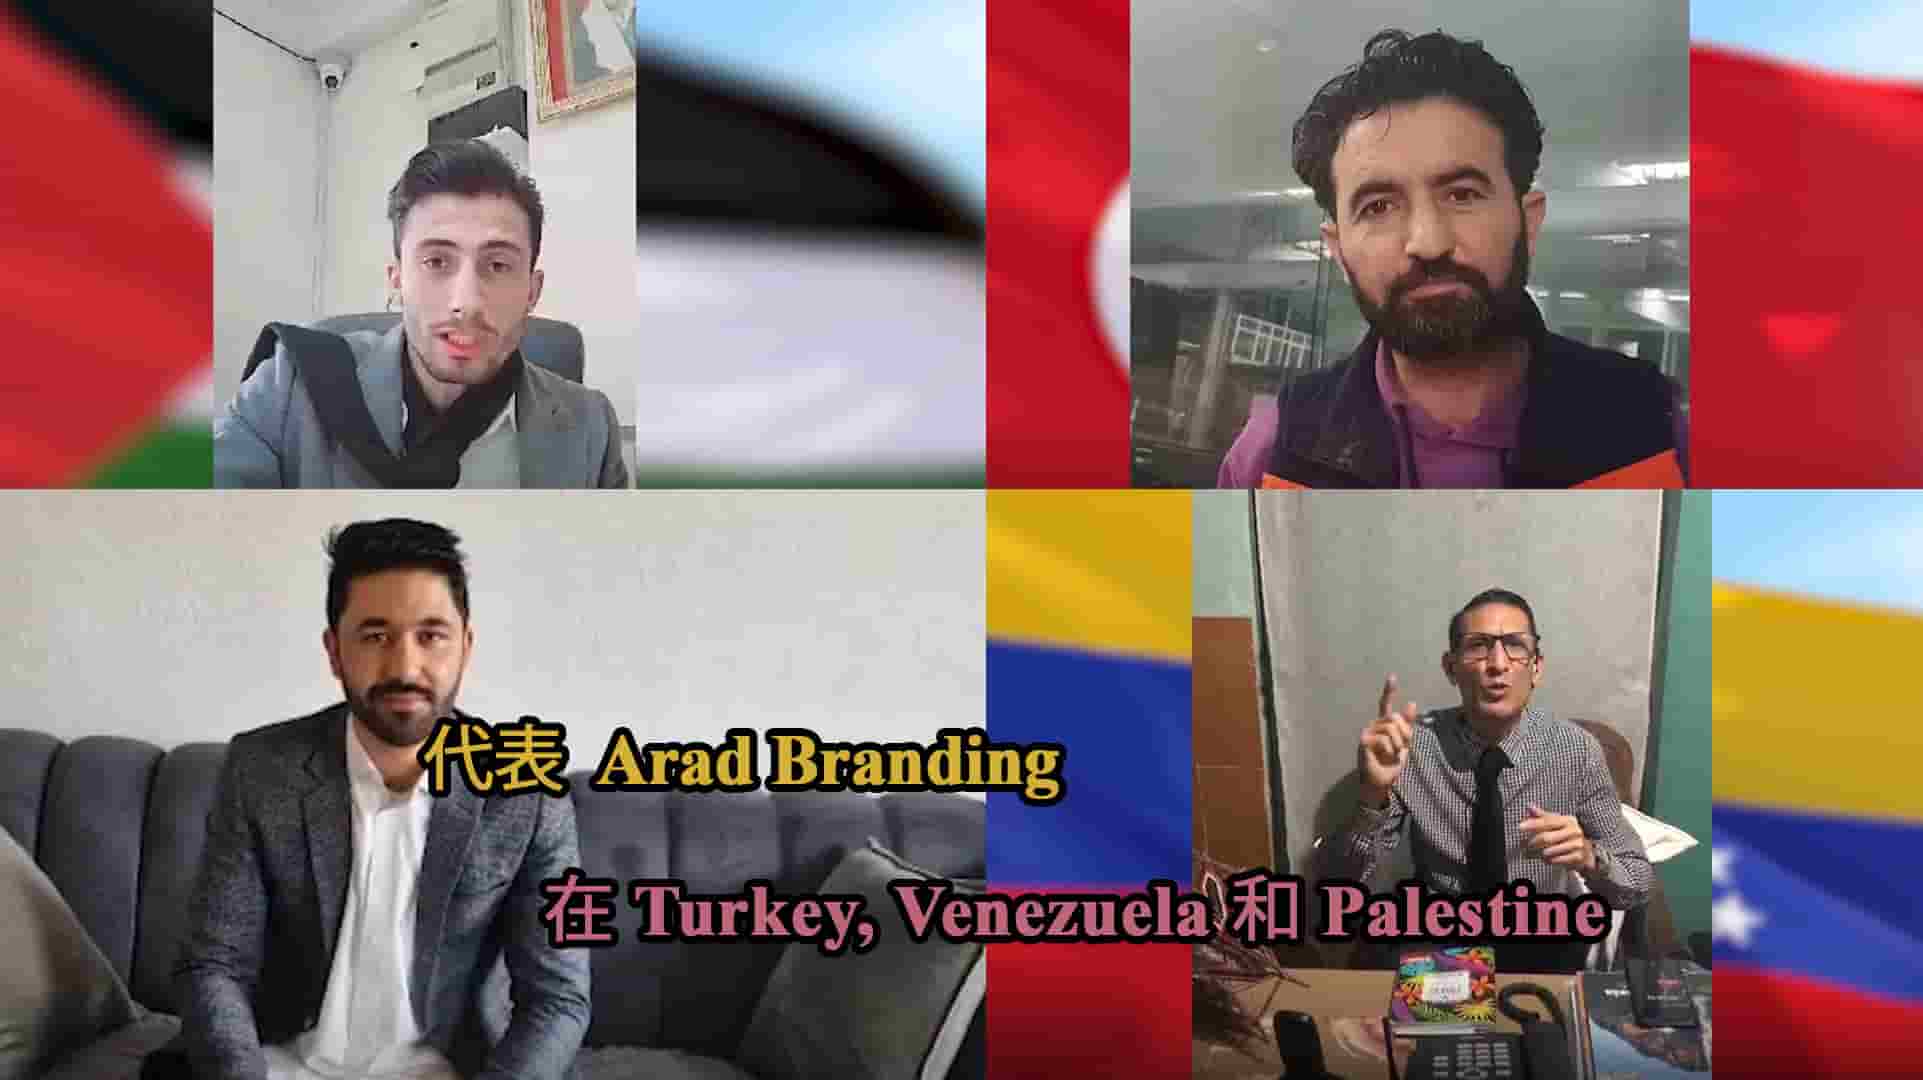 Arad Branding 在土耳其、委内瑞拉和巴勒斯坦的代表 + 新的出口机会和能力